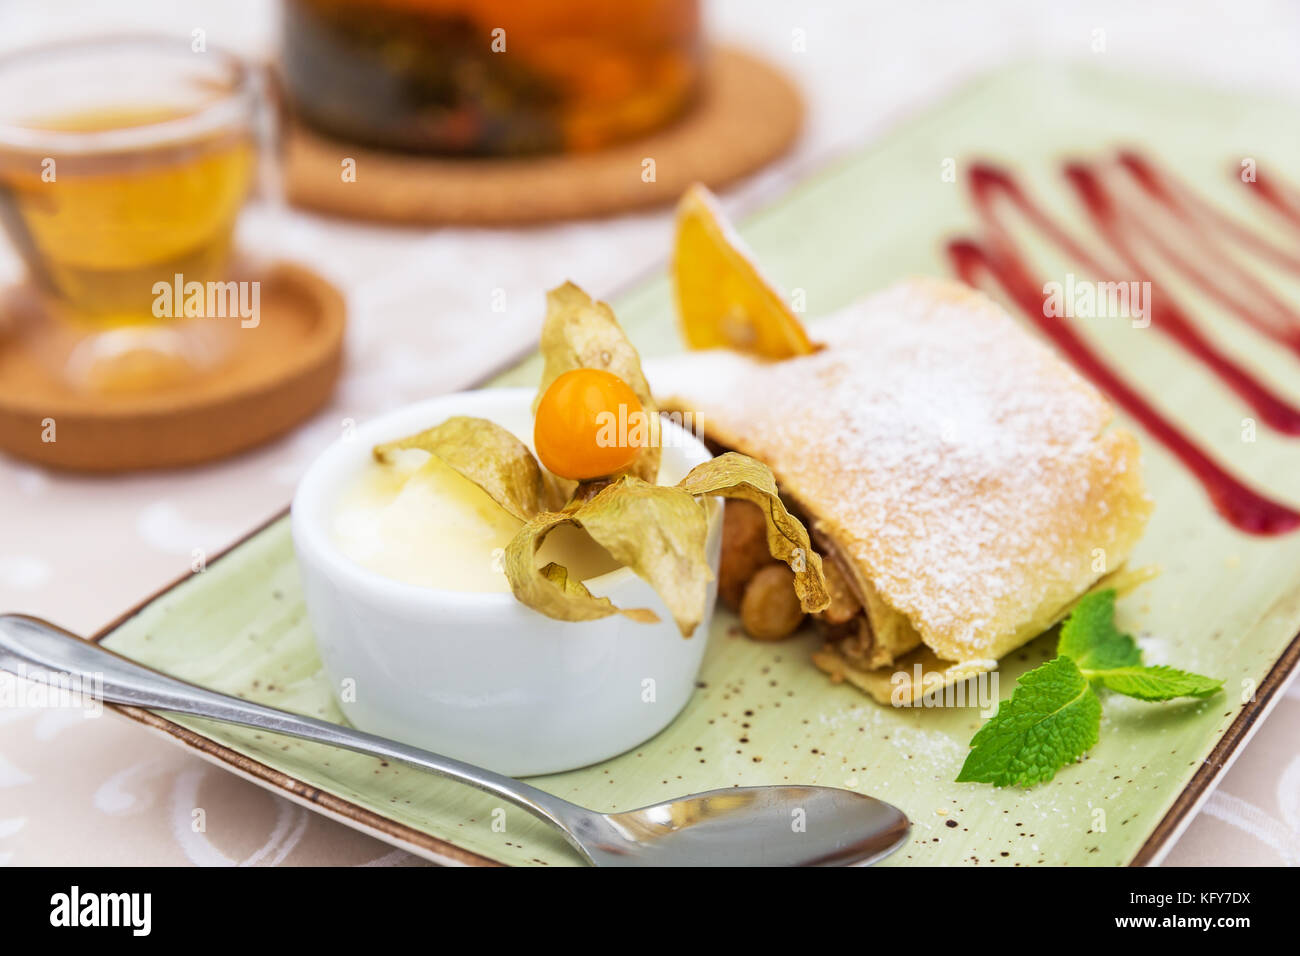 Strudel di mele fatto in casa con zucchero in polvere, gelato alla vaniglia e foglie di menta Foto Stock